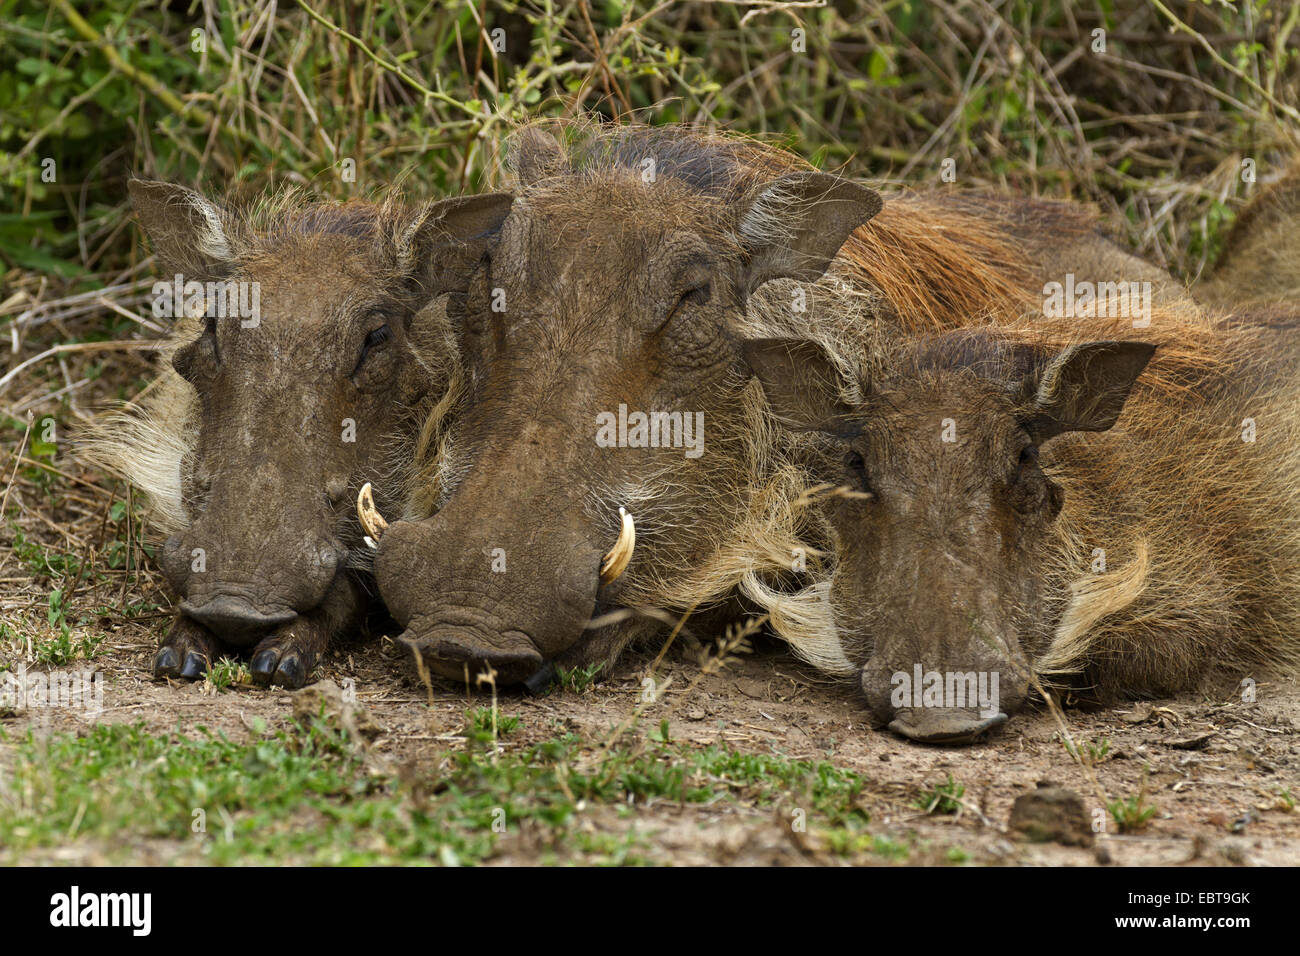 common warthog, savanna warthog (Phacochoerus africanus), sleeping, South Africa, Hluhluwe-Umfolozi National Park Stock Photo